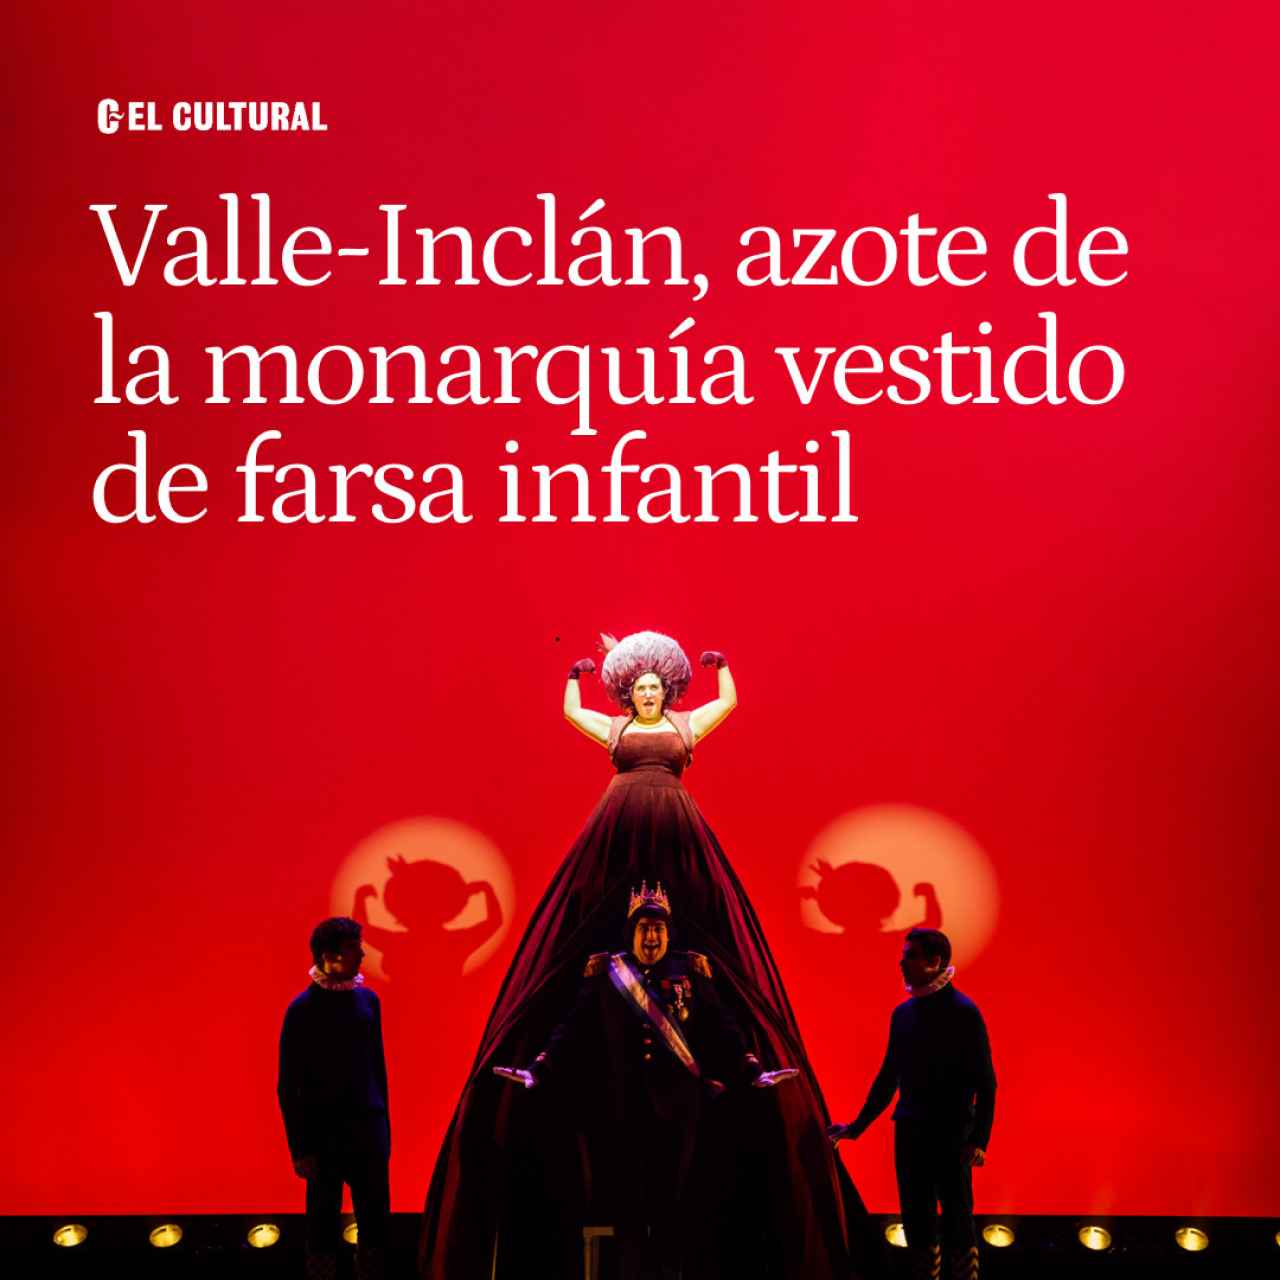 Valle-Inclán, azote de la monarquía disfrazado de farsa infantil